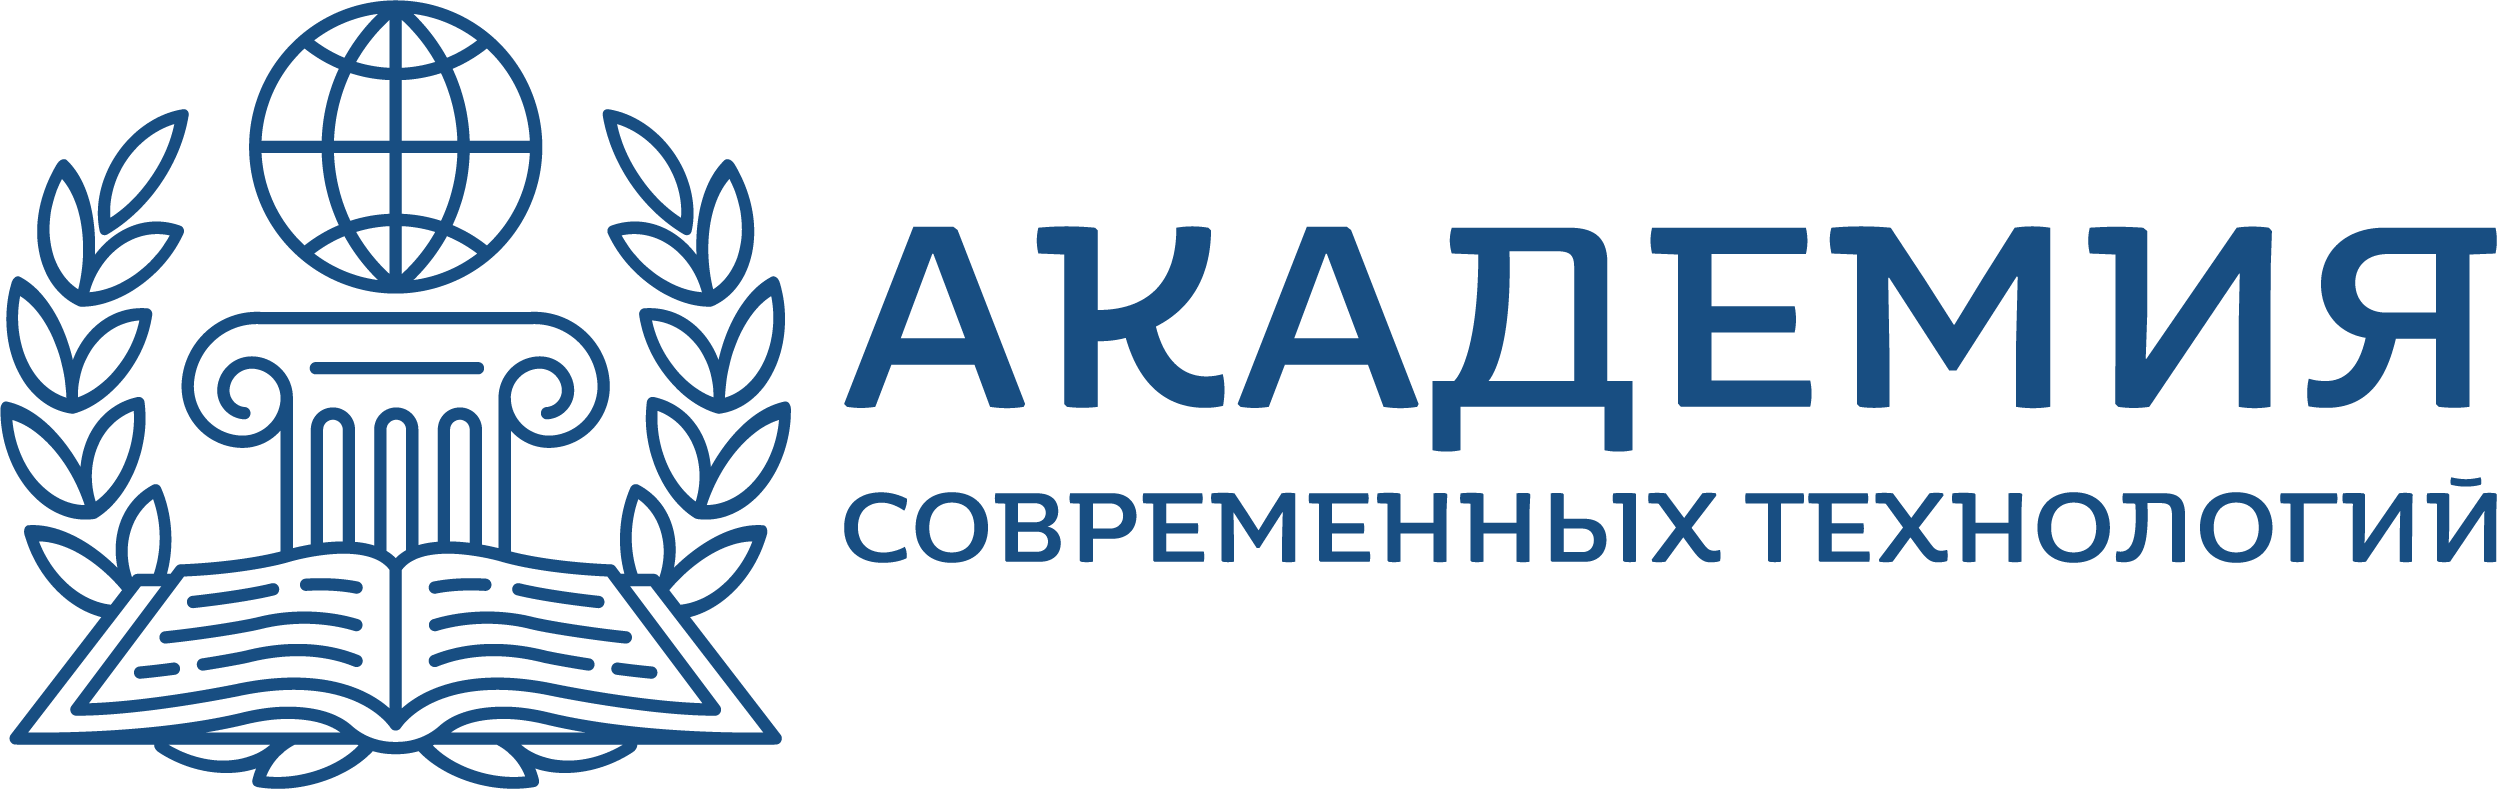 ООО Академия современных технологий Логотип(logo)